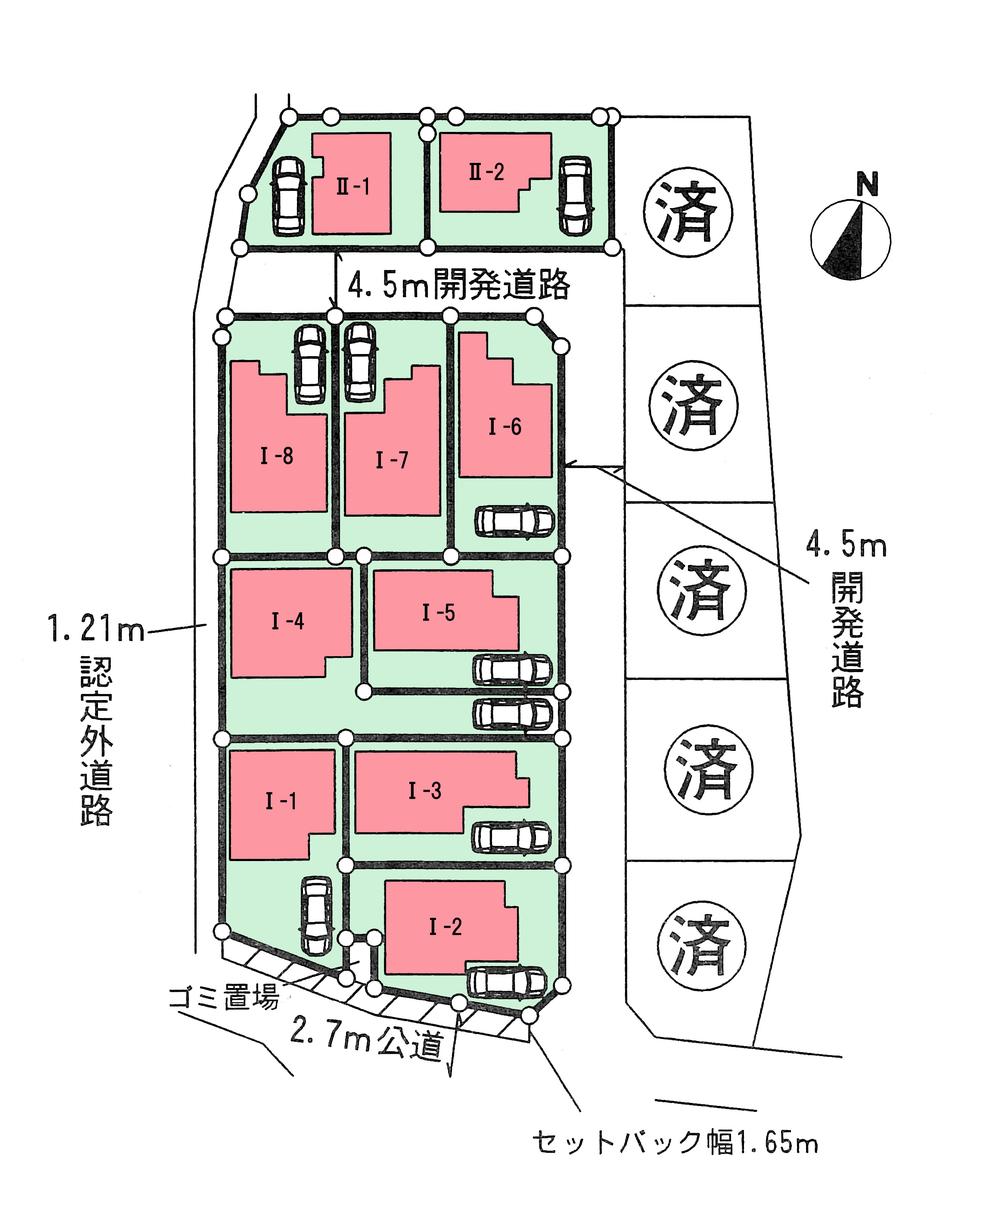 Compartment figure. 31,800,000 yen, 4LDK, Land area 125.6 sq m , Building area 98.12 sq m